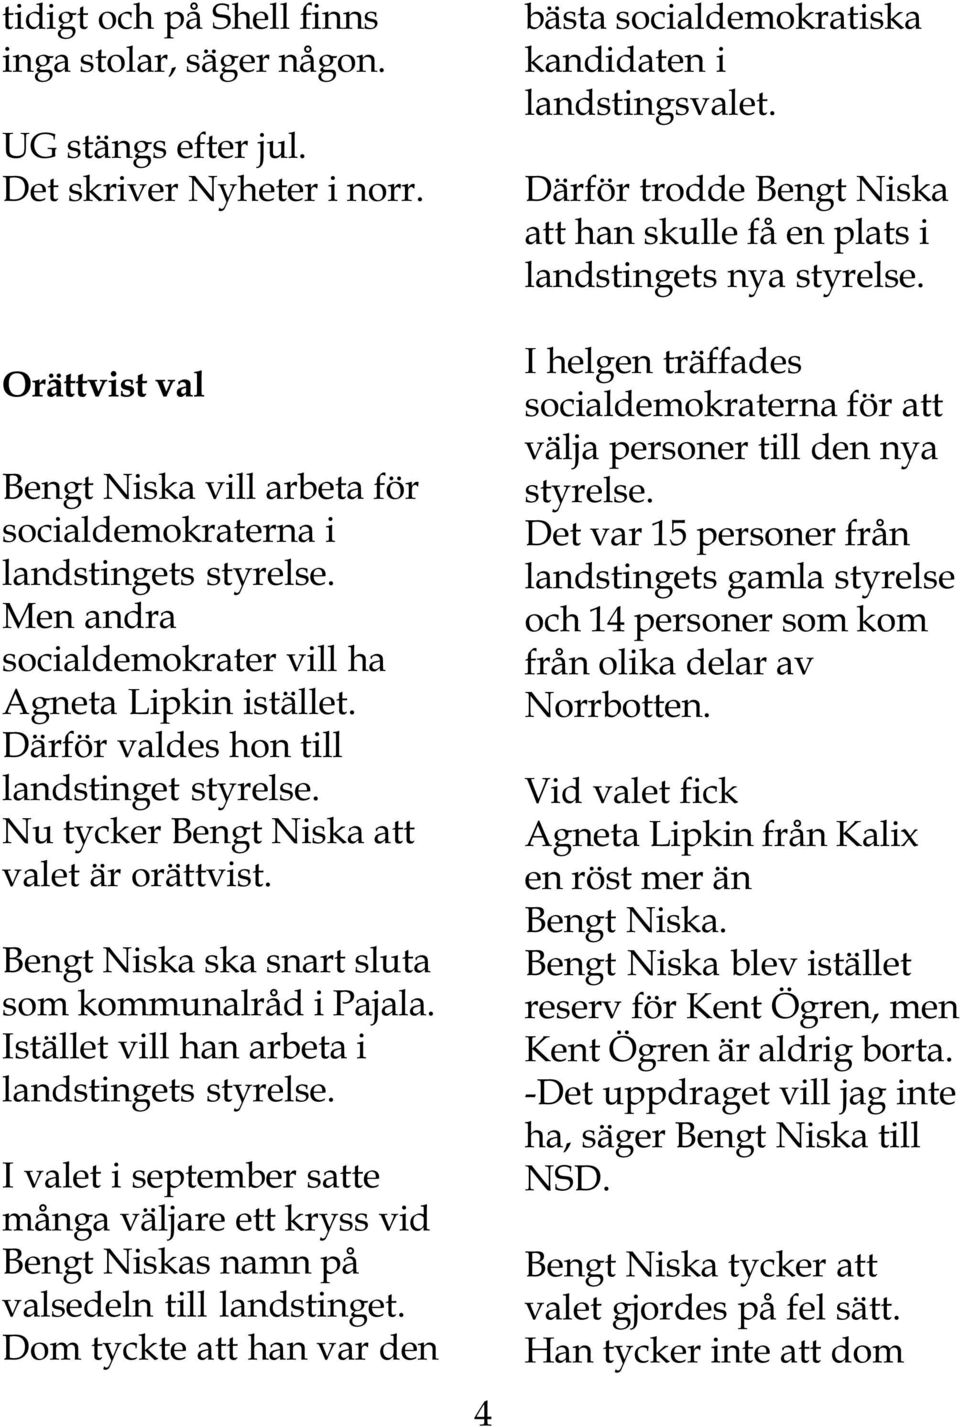 Bengt Niska ska snart sluta som kommunalråd i Pajala. Istället vill han arbeta i landstingets styrelse.